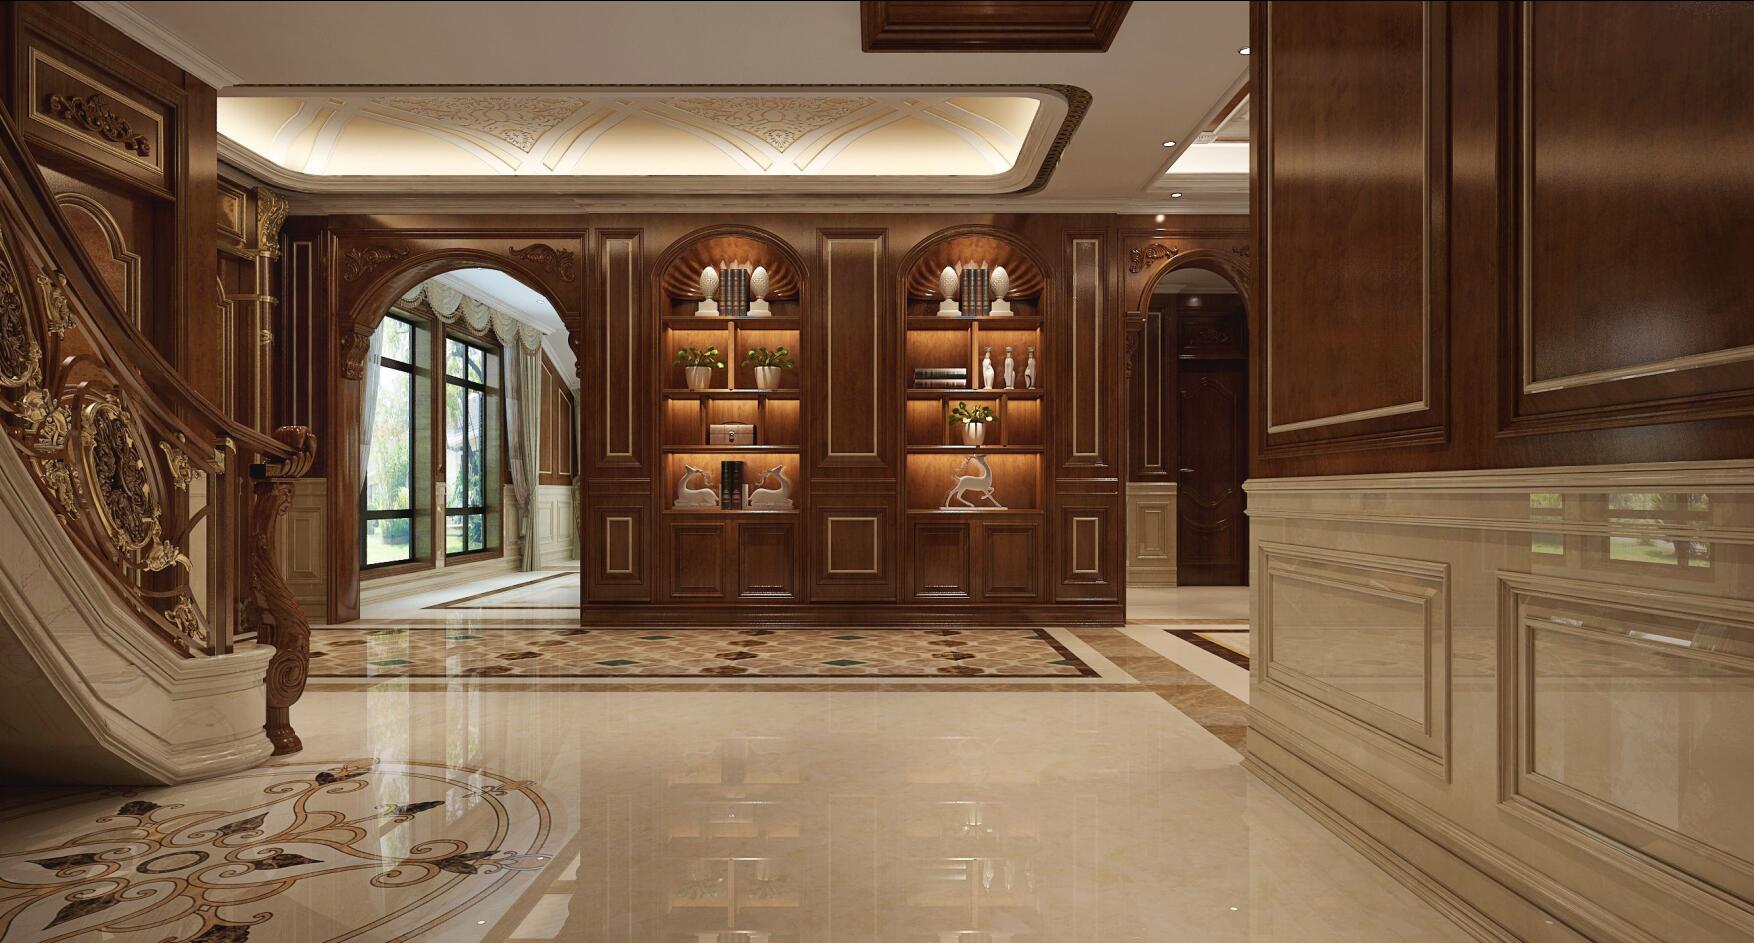 嘉定宝华栎庭330平独栋别墅项目装修美式古典风格设计方案展示,上海